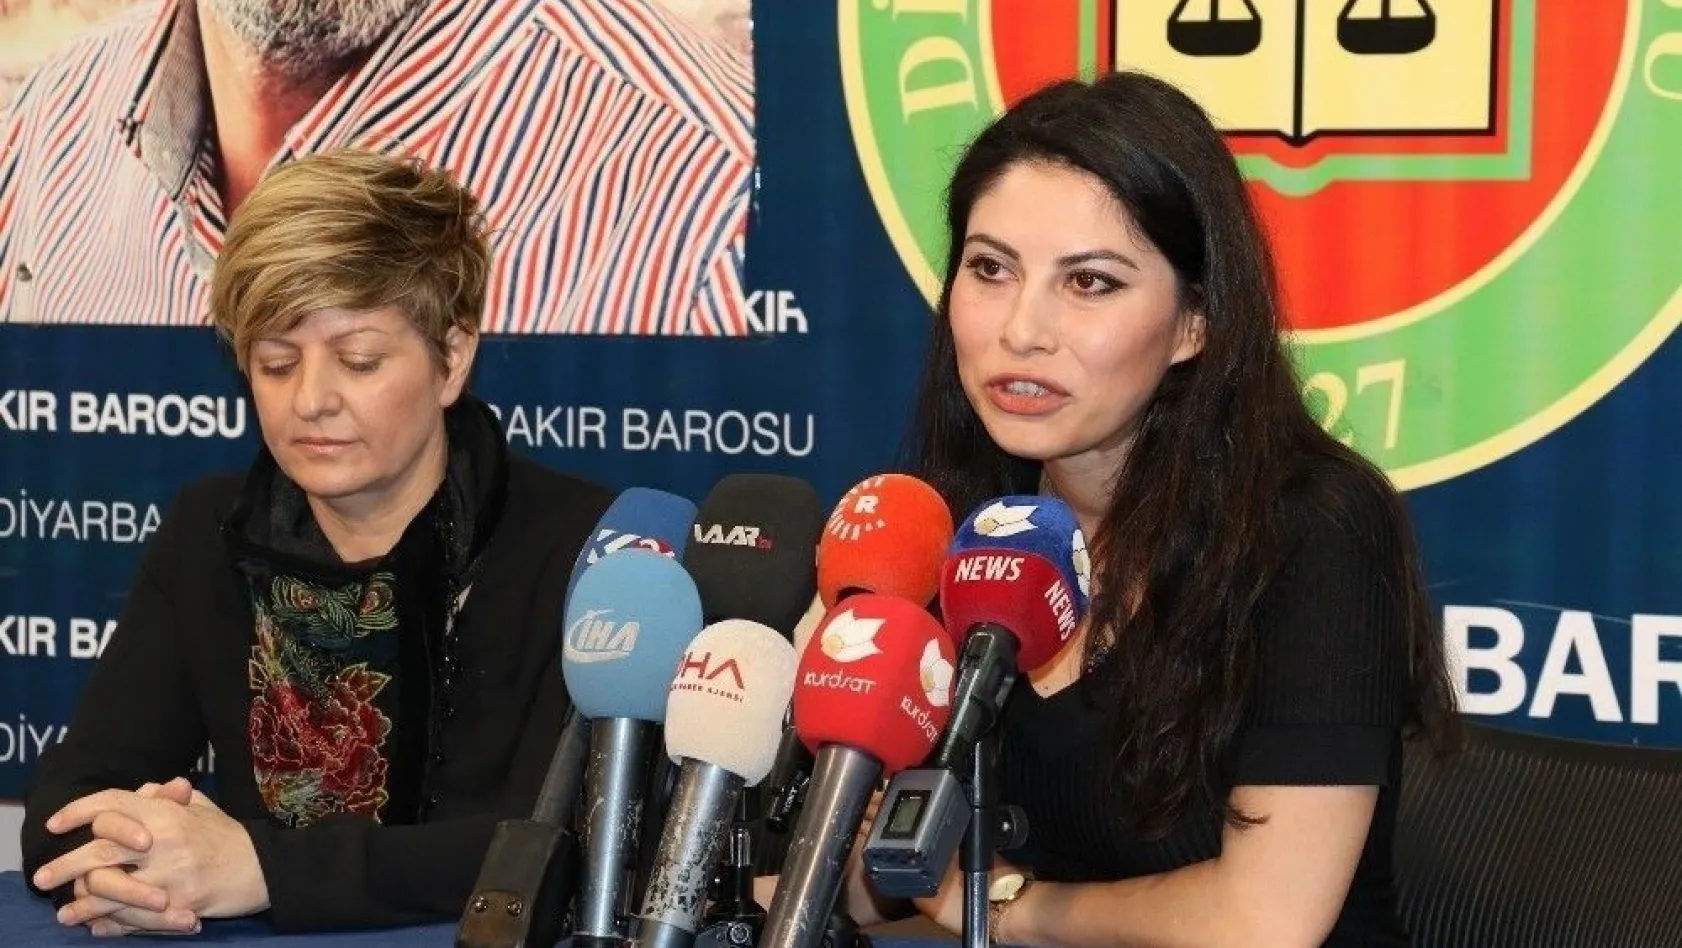 Diyarbakır Barosu'ndan 8 Mart açıklaması
